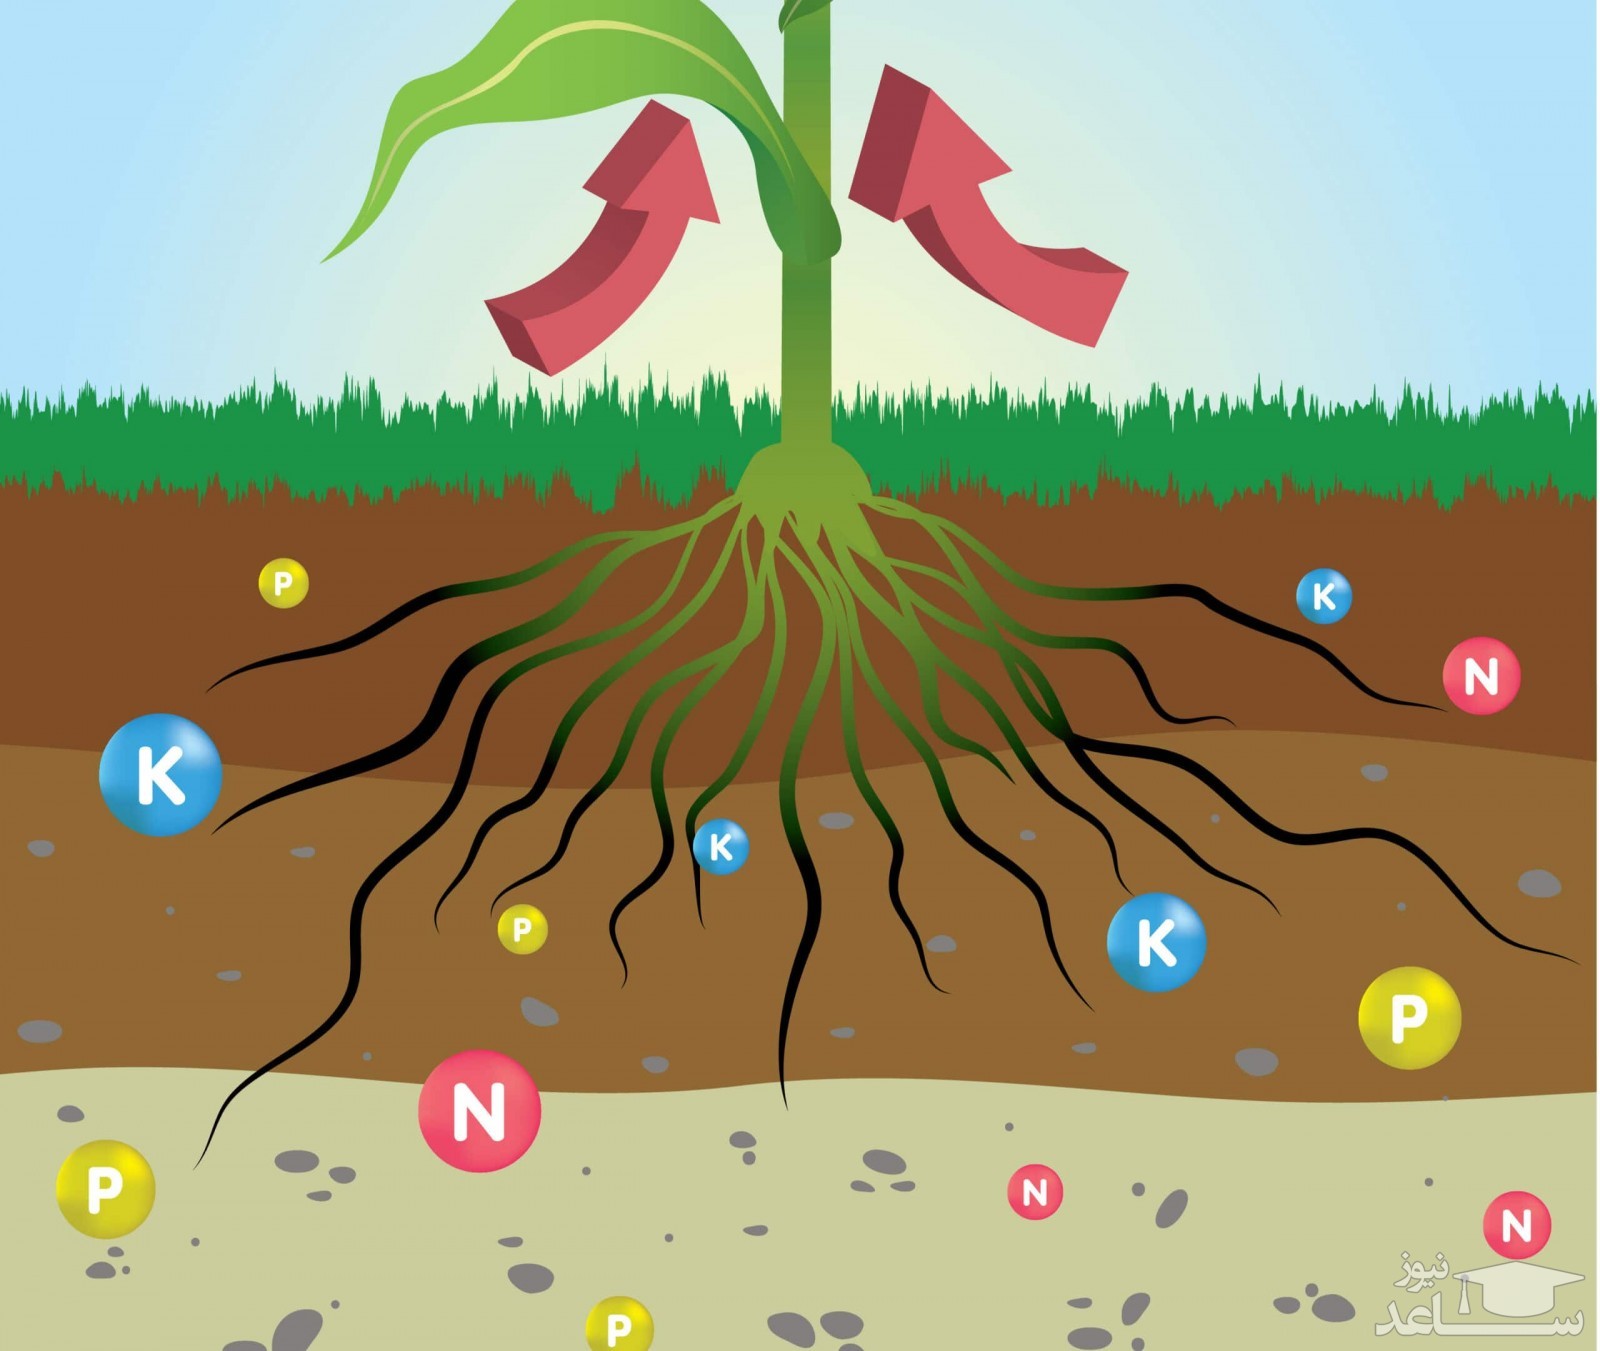 عناصر معدنی در رشد گیاهان و درختان چه نقشی داردند؟